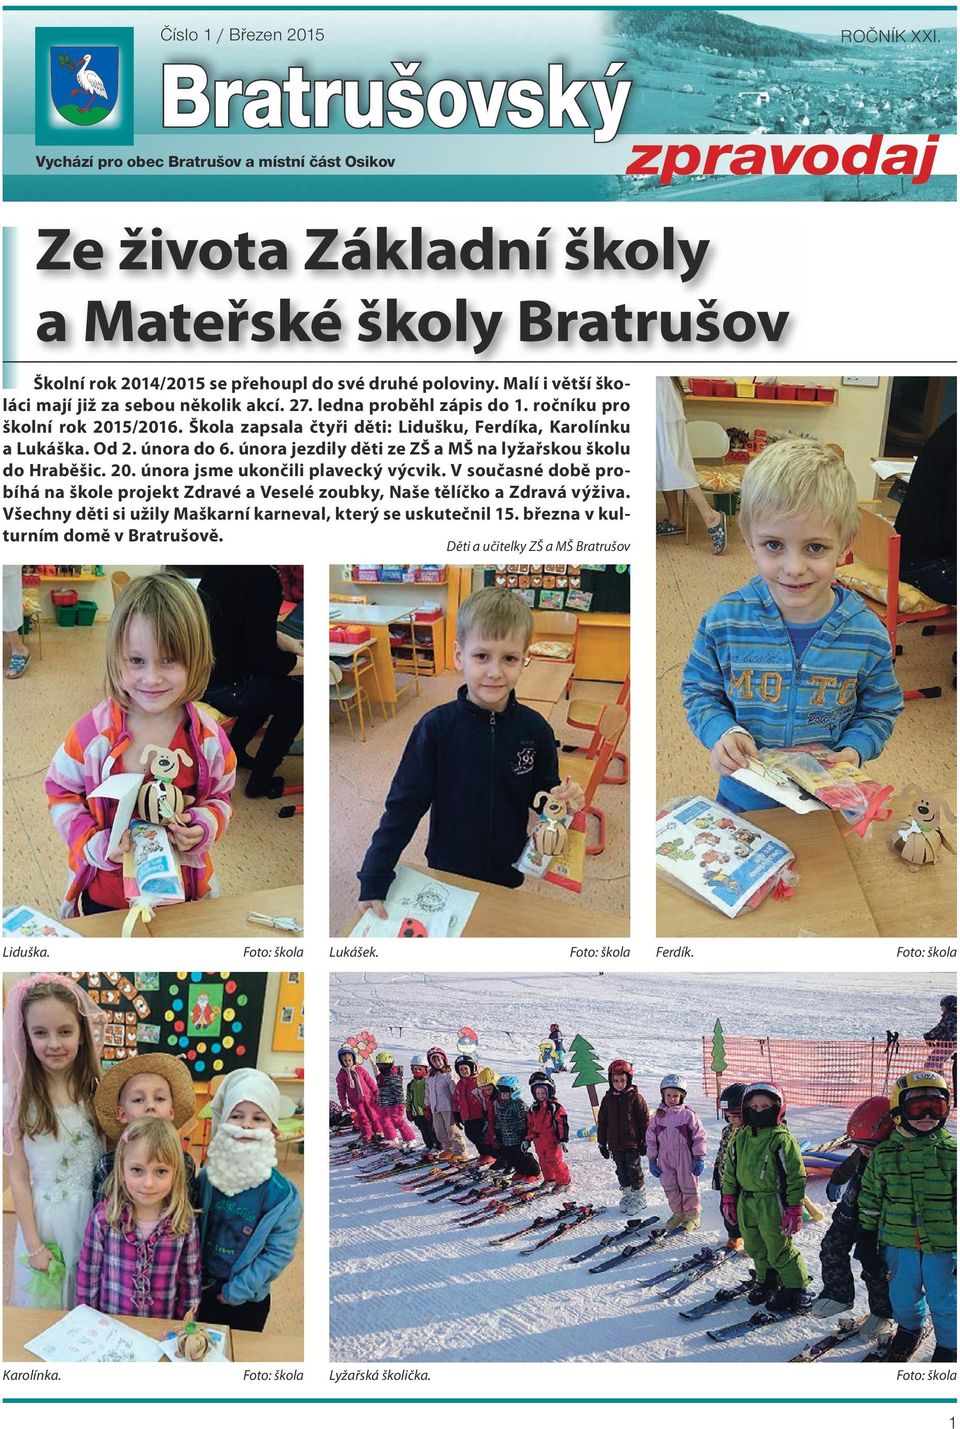 Malí i větší školáci mají již za sebou několik akcí. 27. ledna proběhl zápis do 1. ročníku pro školní rok 2015/2016. Škola zapsala čtyři děti: Lidušku, Ferdíka, Karolínku a Lukáška. Od 2. února do 6.